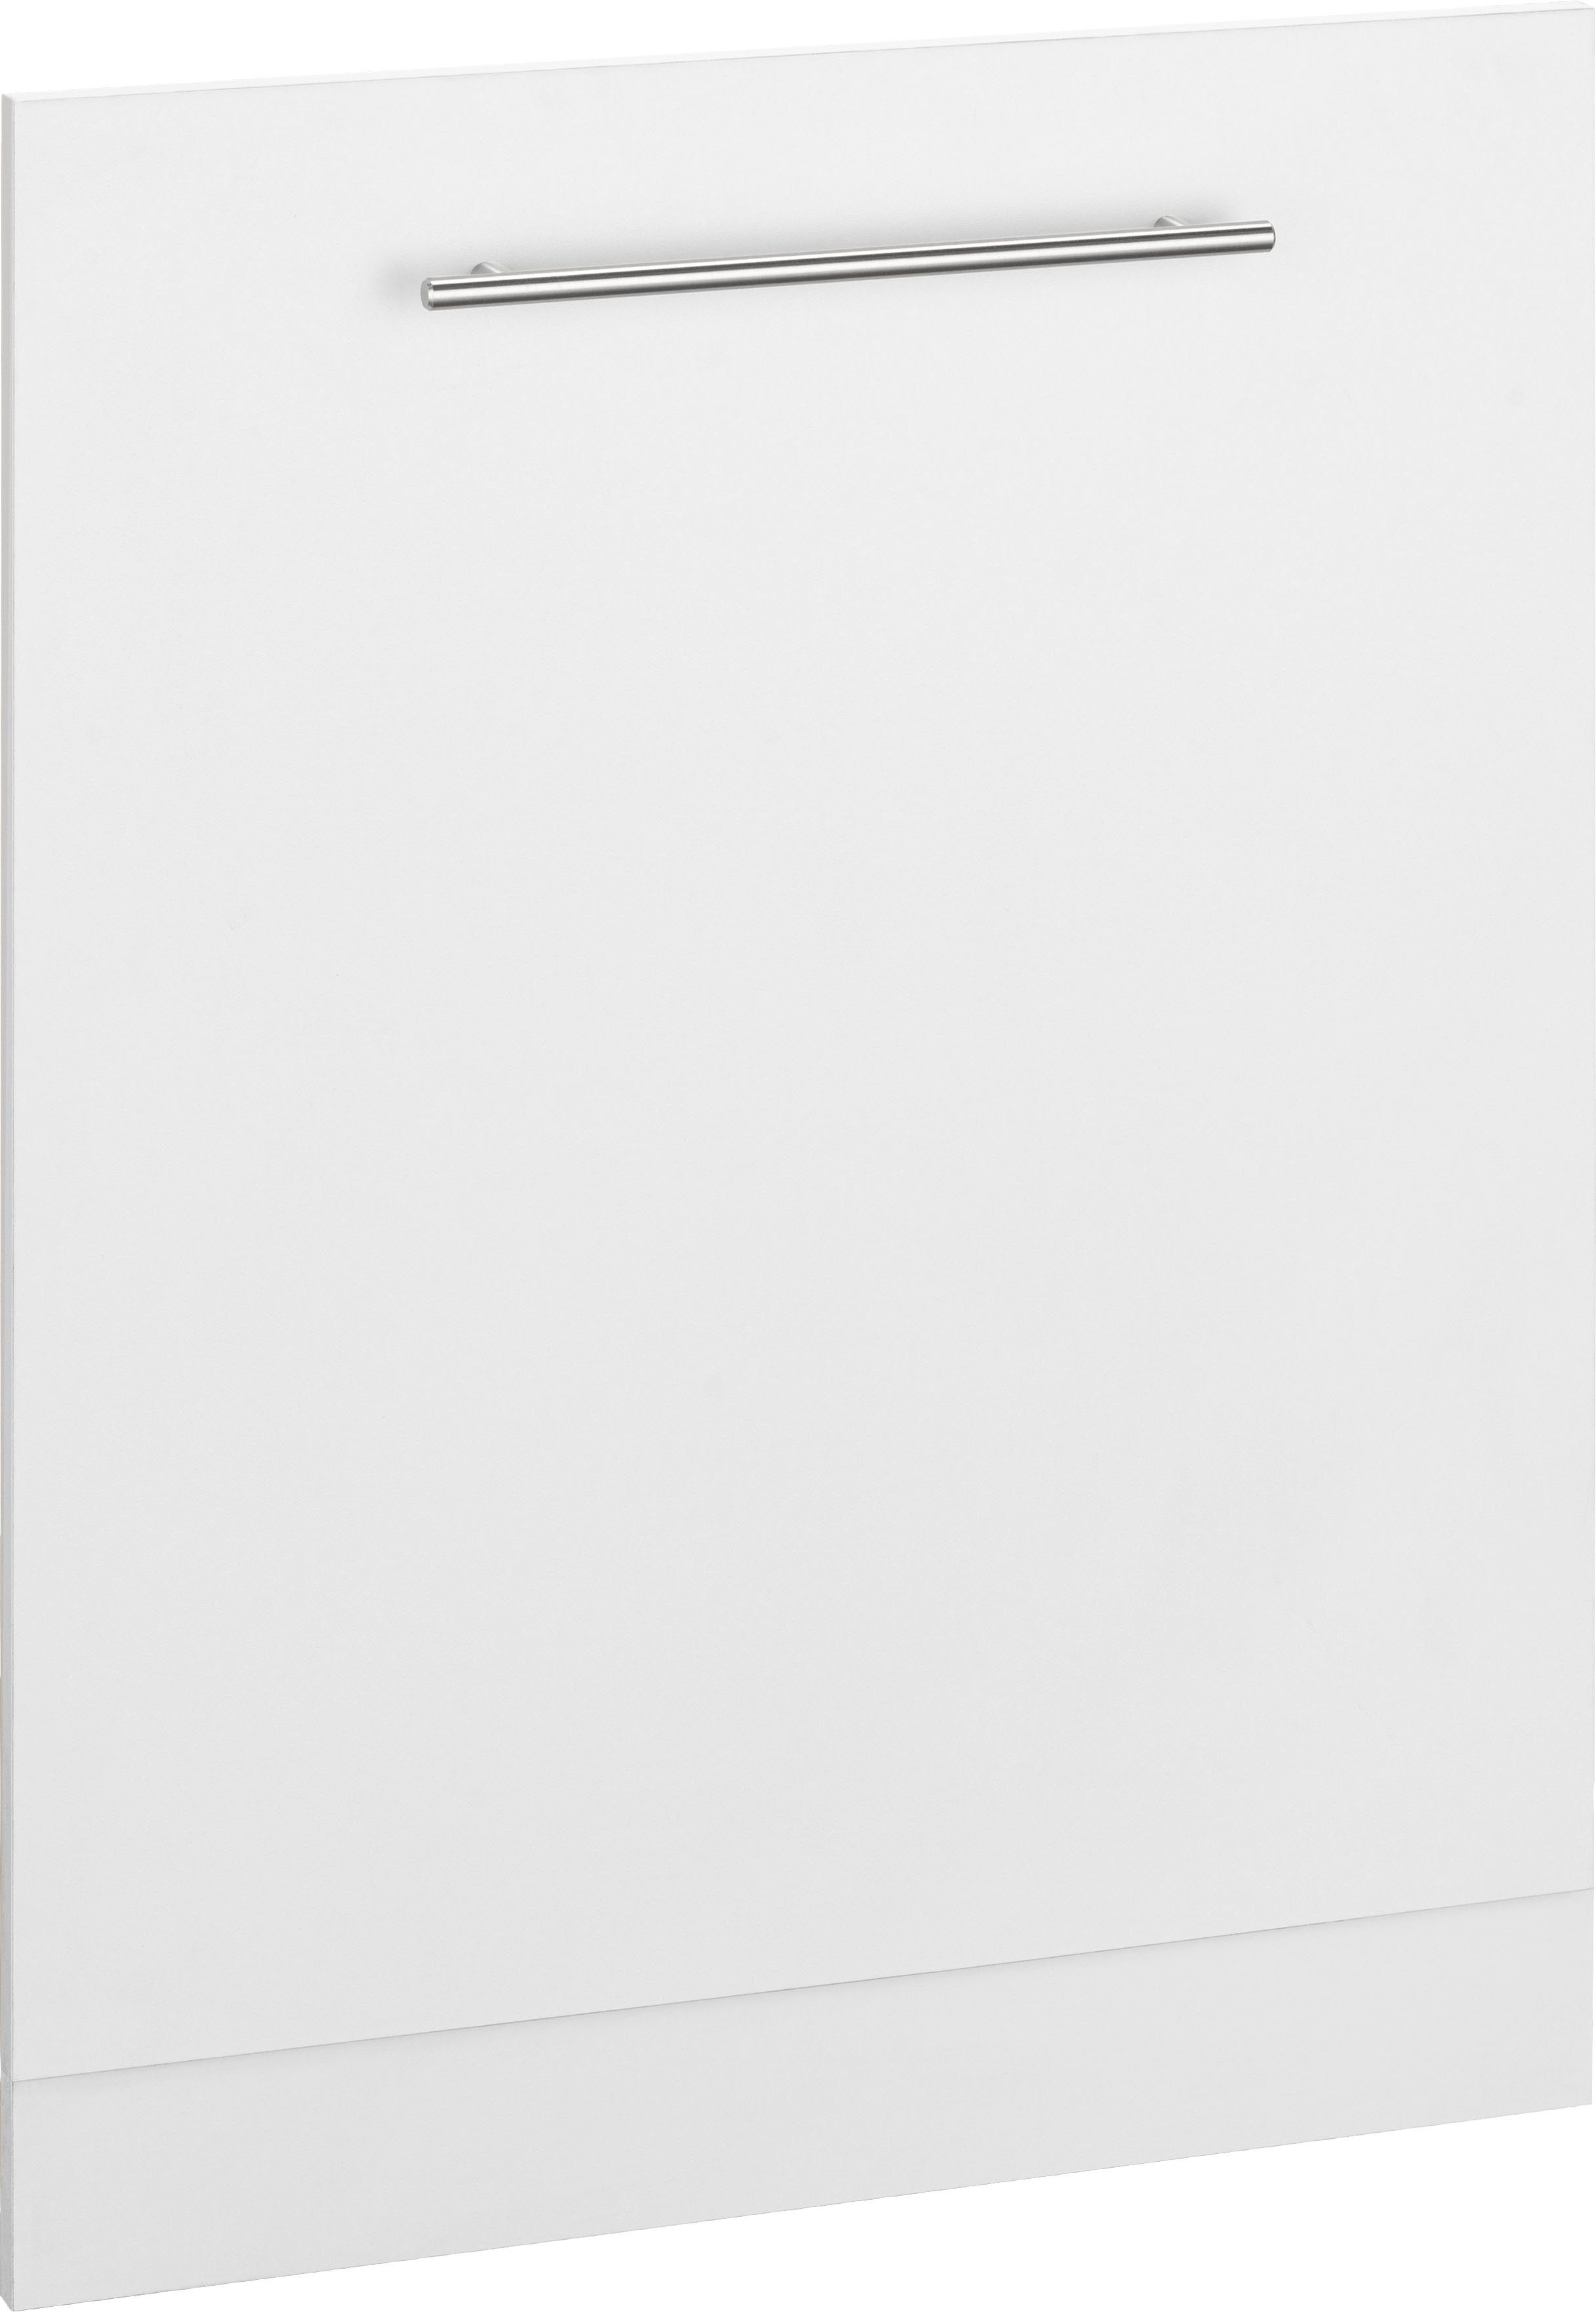 wiho Küchen Frontblende Unna, 60 cm breit, für vollintegrierbaren Geschirrspüler weiß | Sockelblenden